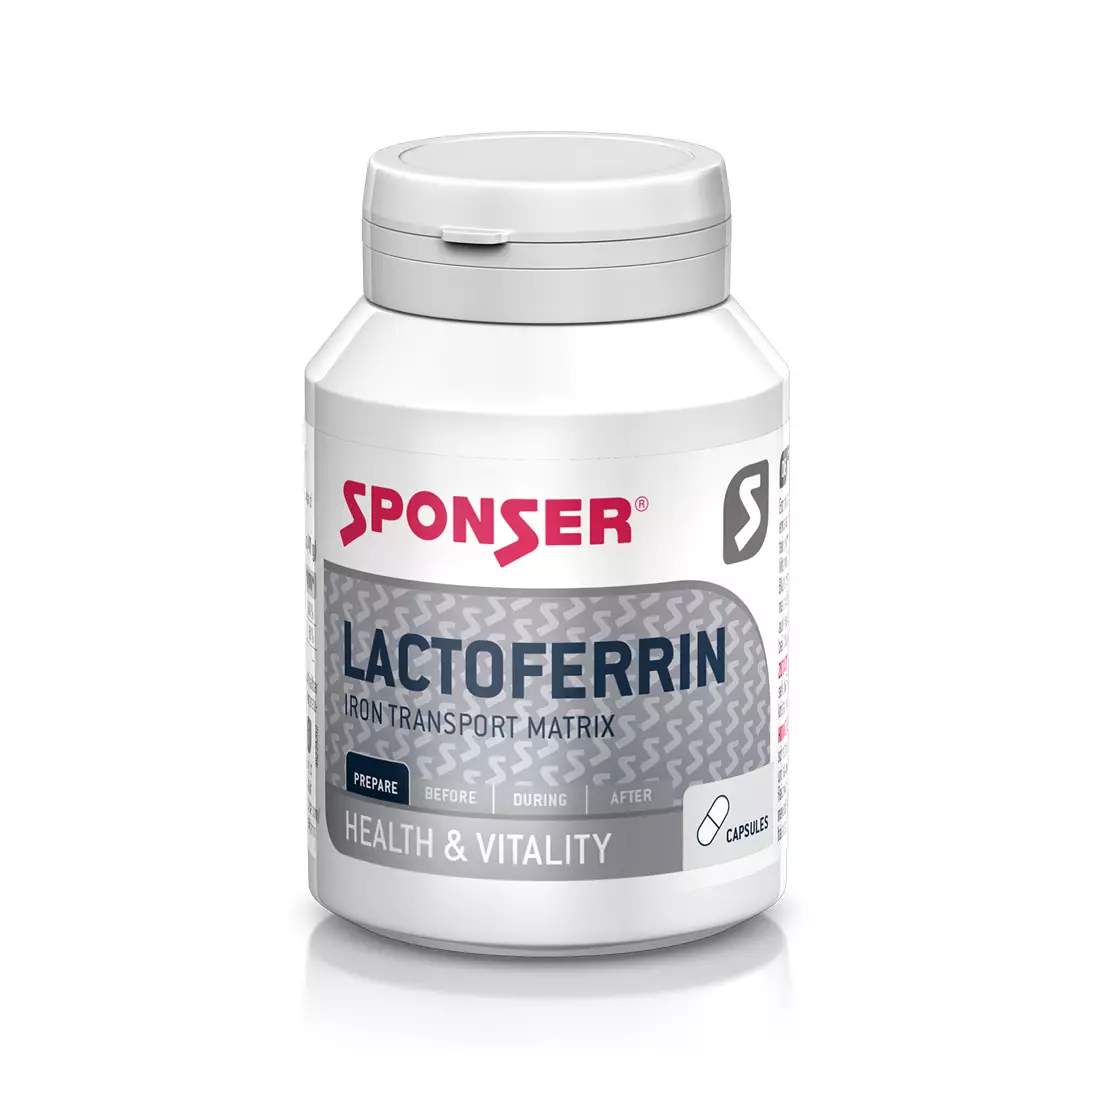 Vas kiegészítő SPONSER LACTOFERRIN IRON TRANSPORT MATRIX 90 tabletek 